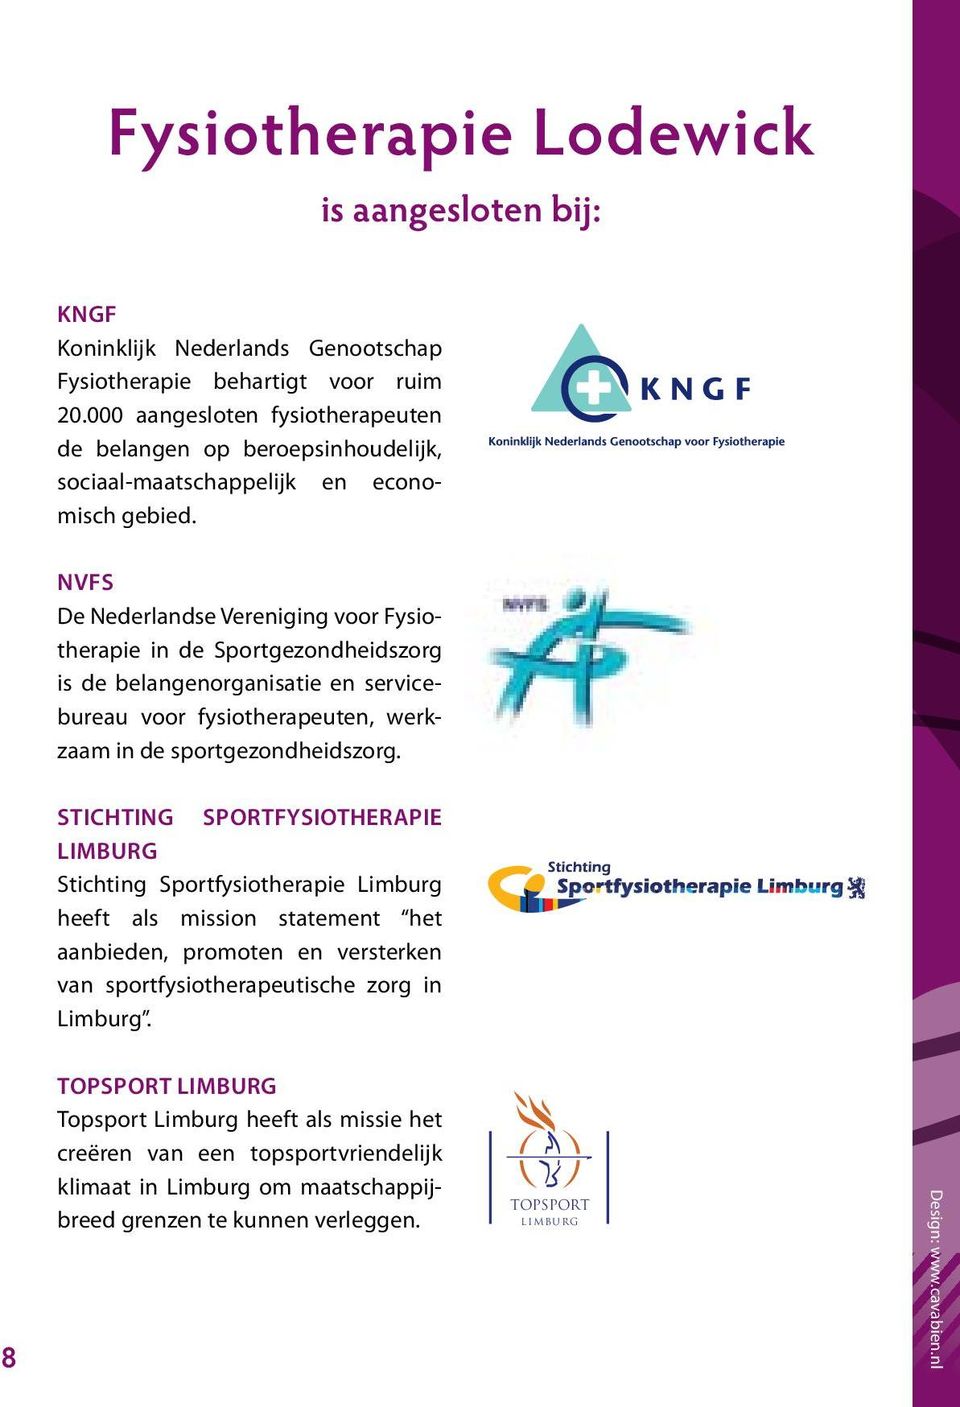 NVFS De Nederlandse Vereniging voor Fysiotherapie in de Sportgezondheidszorg is de belangenorganisatie en servicebureau voor fysiotherapeuten, werkzaam in de sportgezondheidszorg.